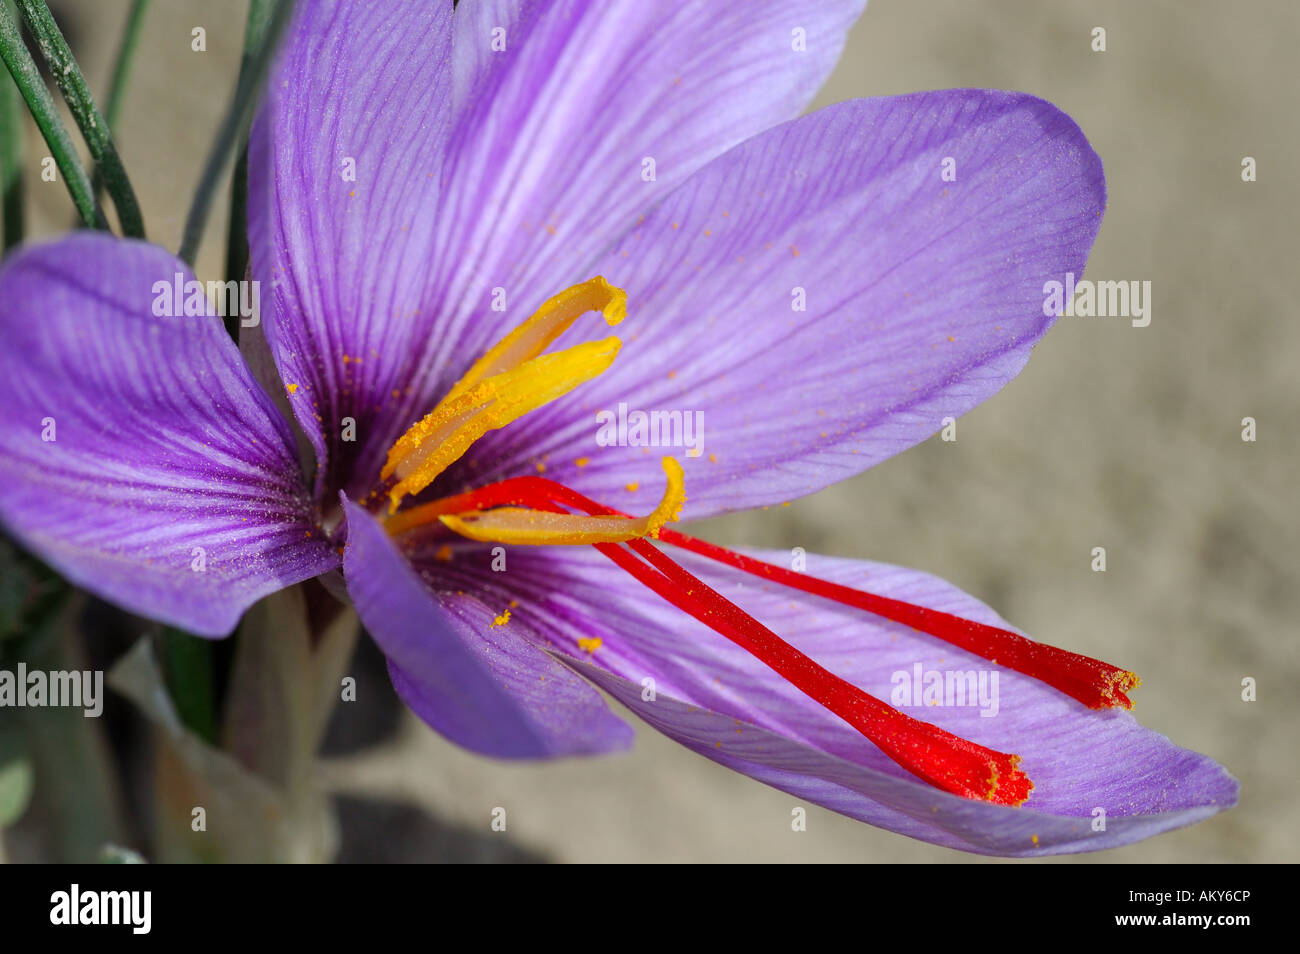 Autumn Crocus, Saffron flower, Crocus sativus, Mund, Valais, Switzerland Stock Photo